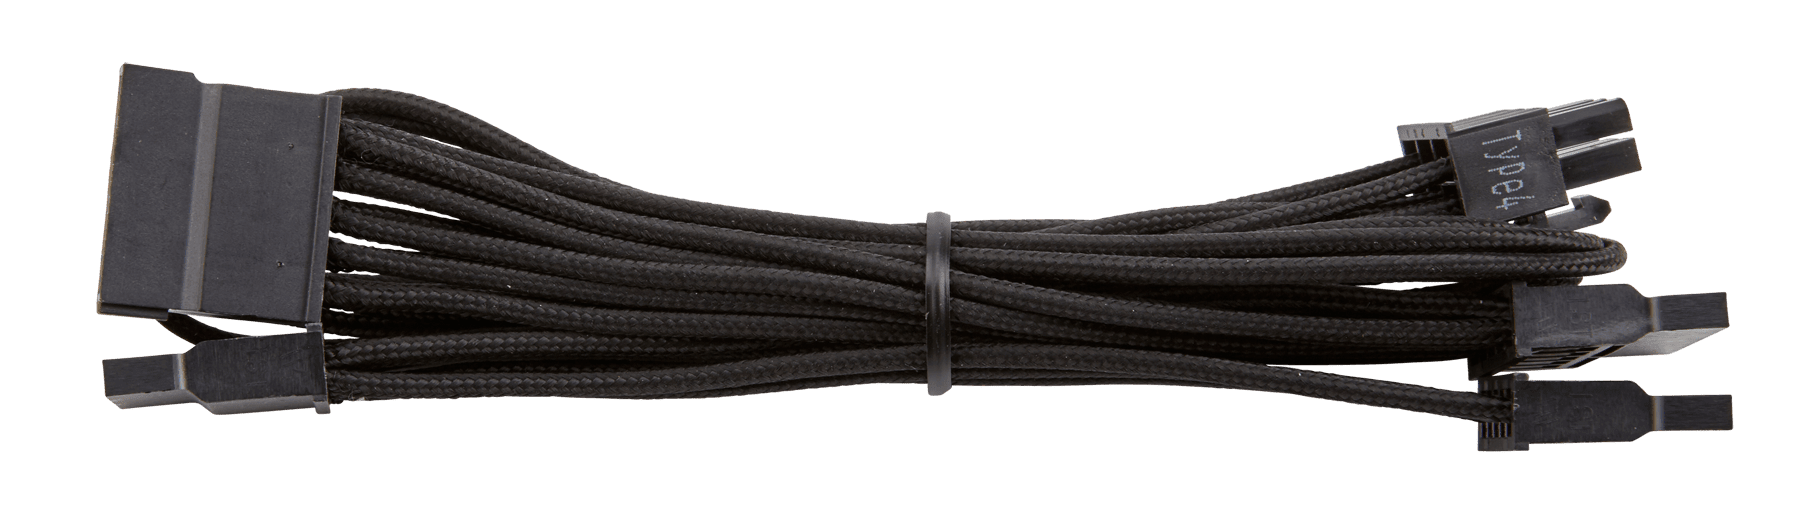 Cable SATA Startech con. B: Datos SATA Hembra de 7 vías, long 460mm